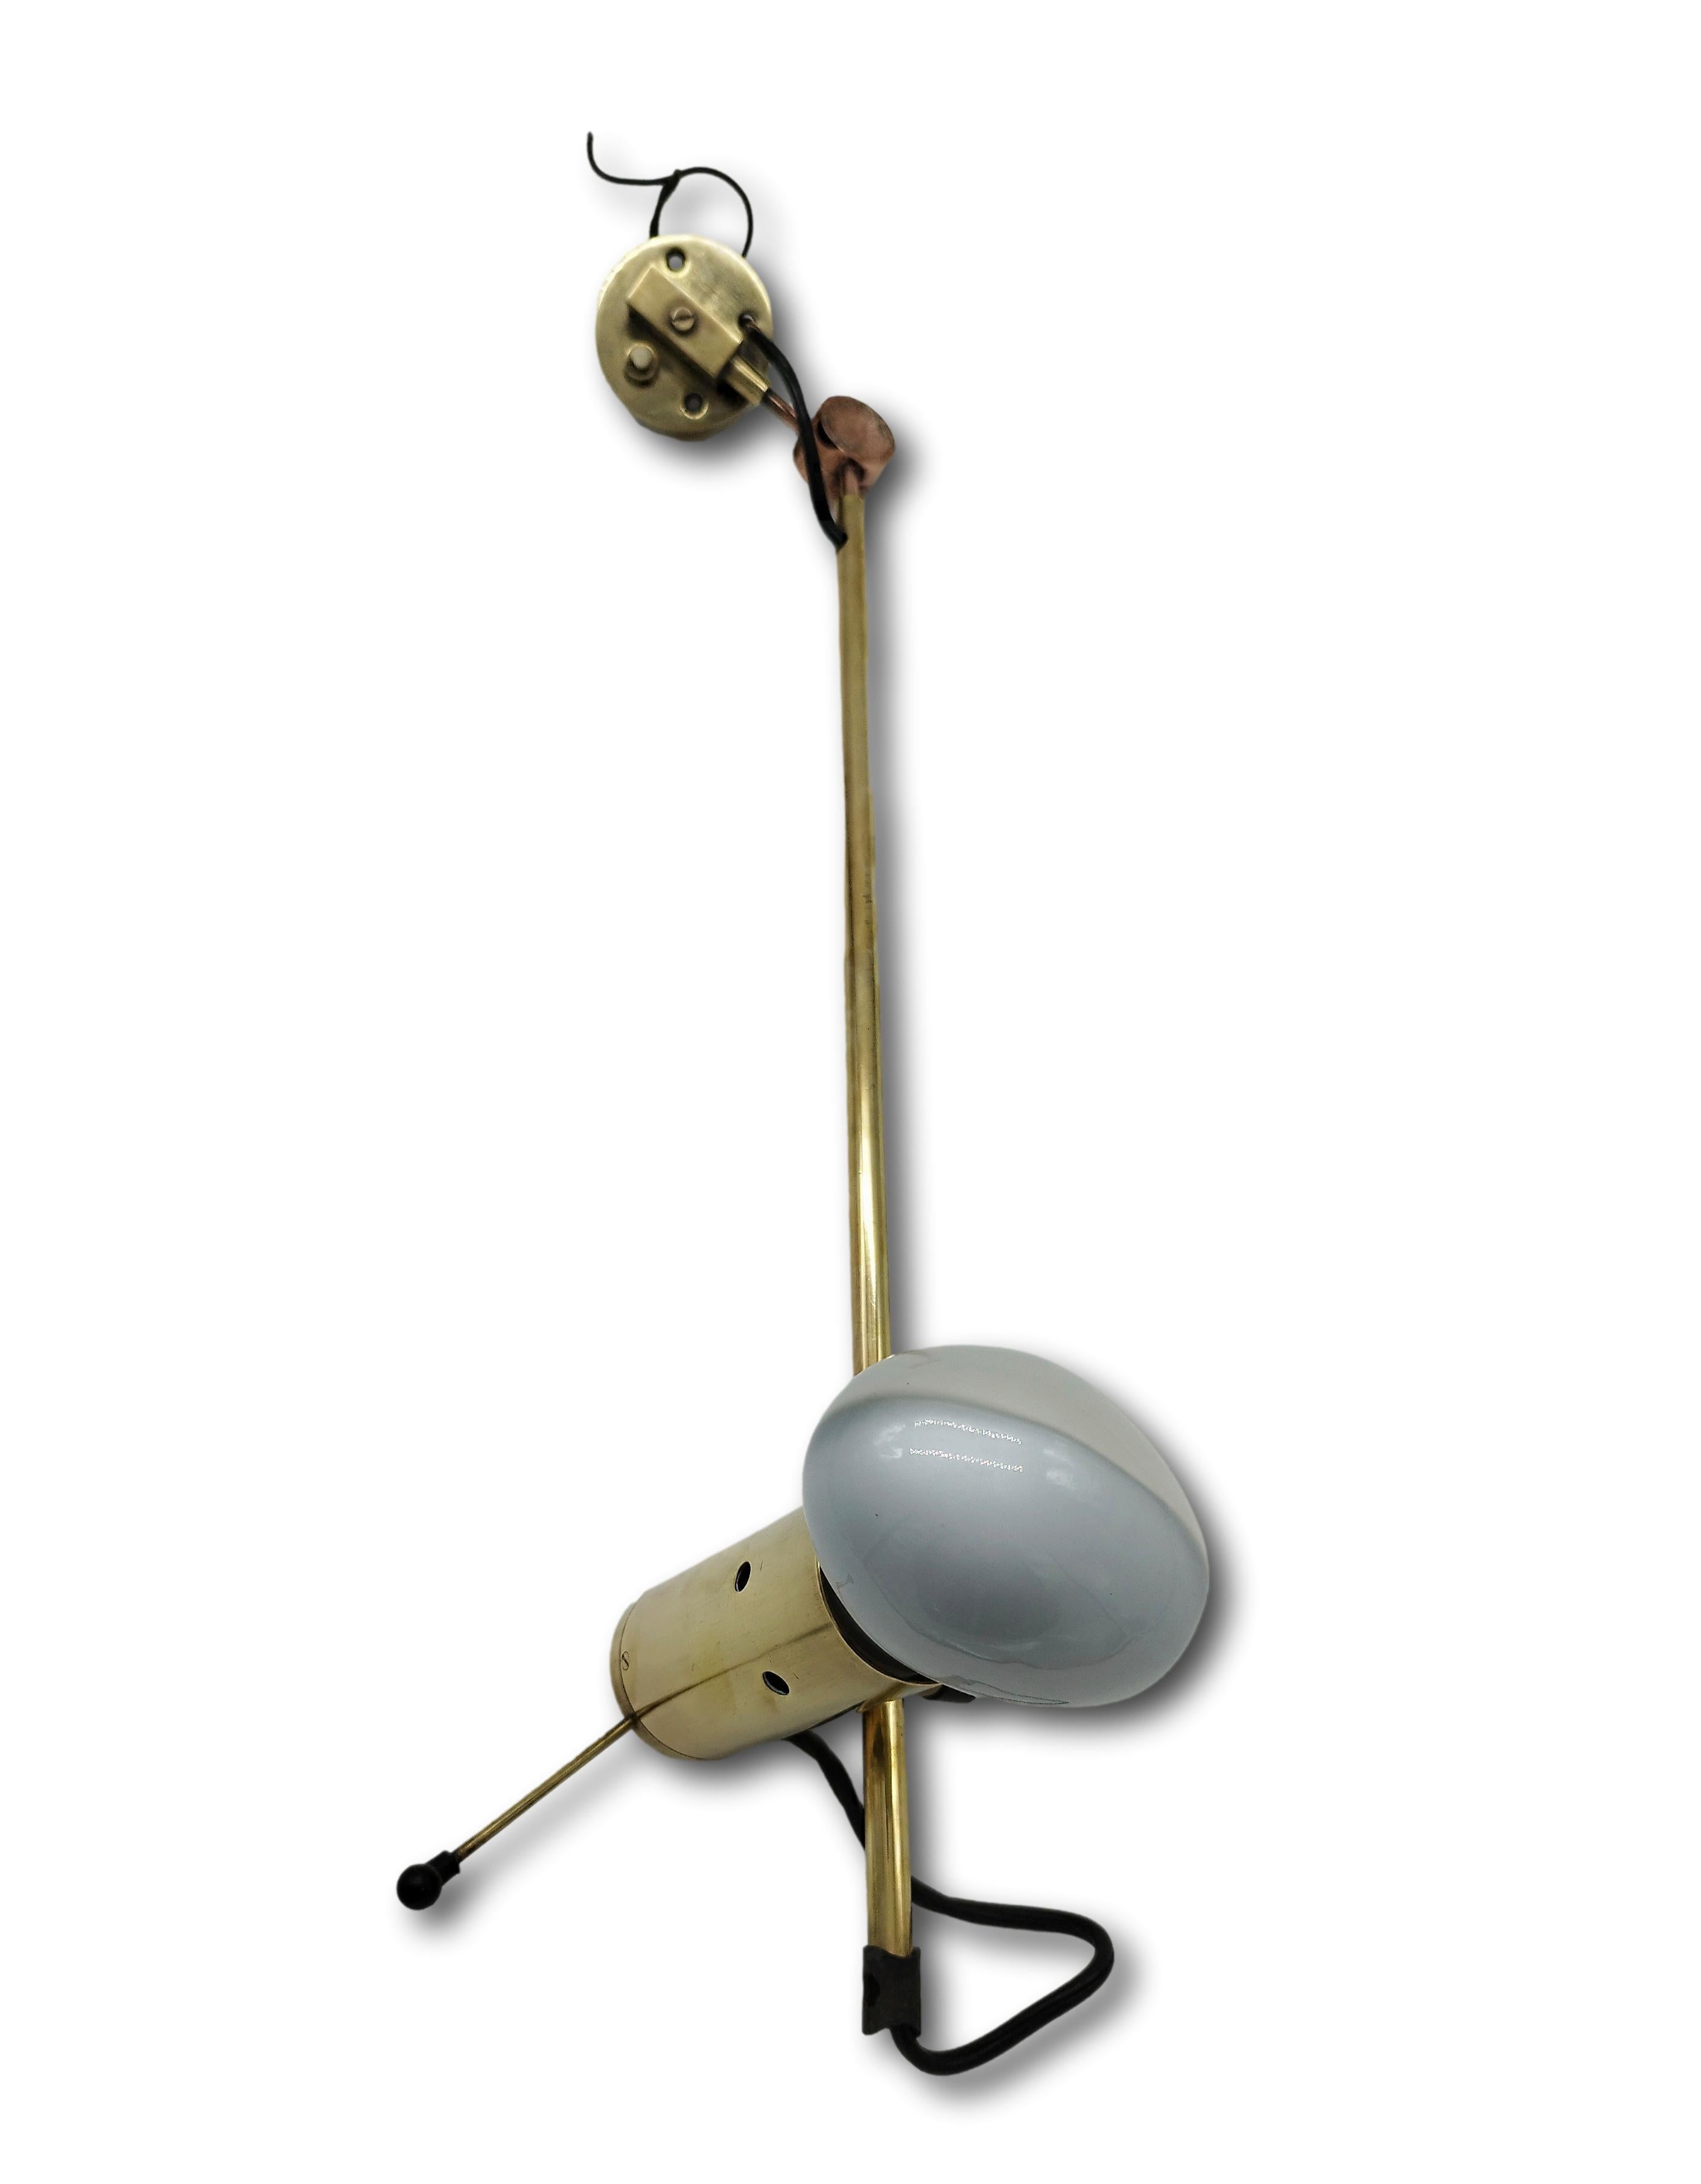 Die Wandleuchte Modell 194 ist ein seltenes Stück von Tito Agnoli für Oluce, Italien 1954. Es handelt sich um eine Erstausgabe mit Armen und Beschlägen aus Messing und einer originalen Cornalux-Hammerkopf-Lampe. Dieses Design zeichnet sich durch